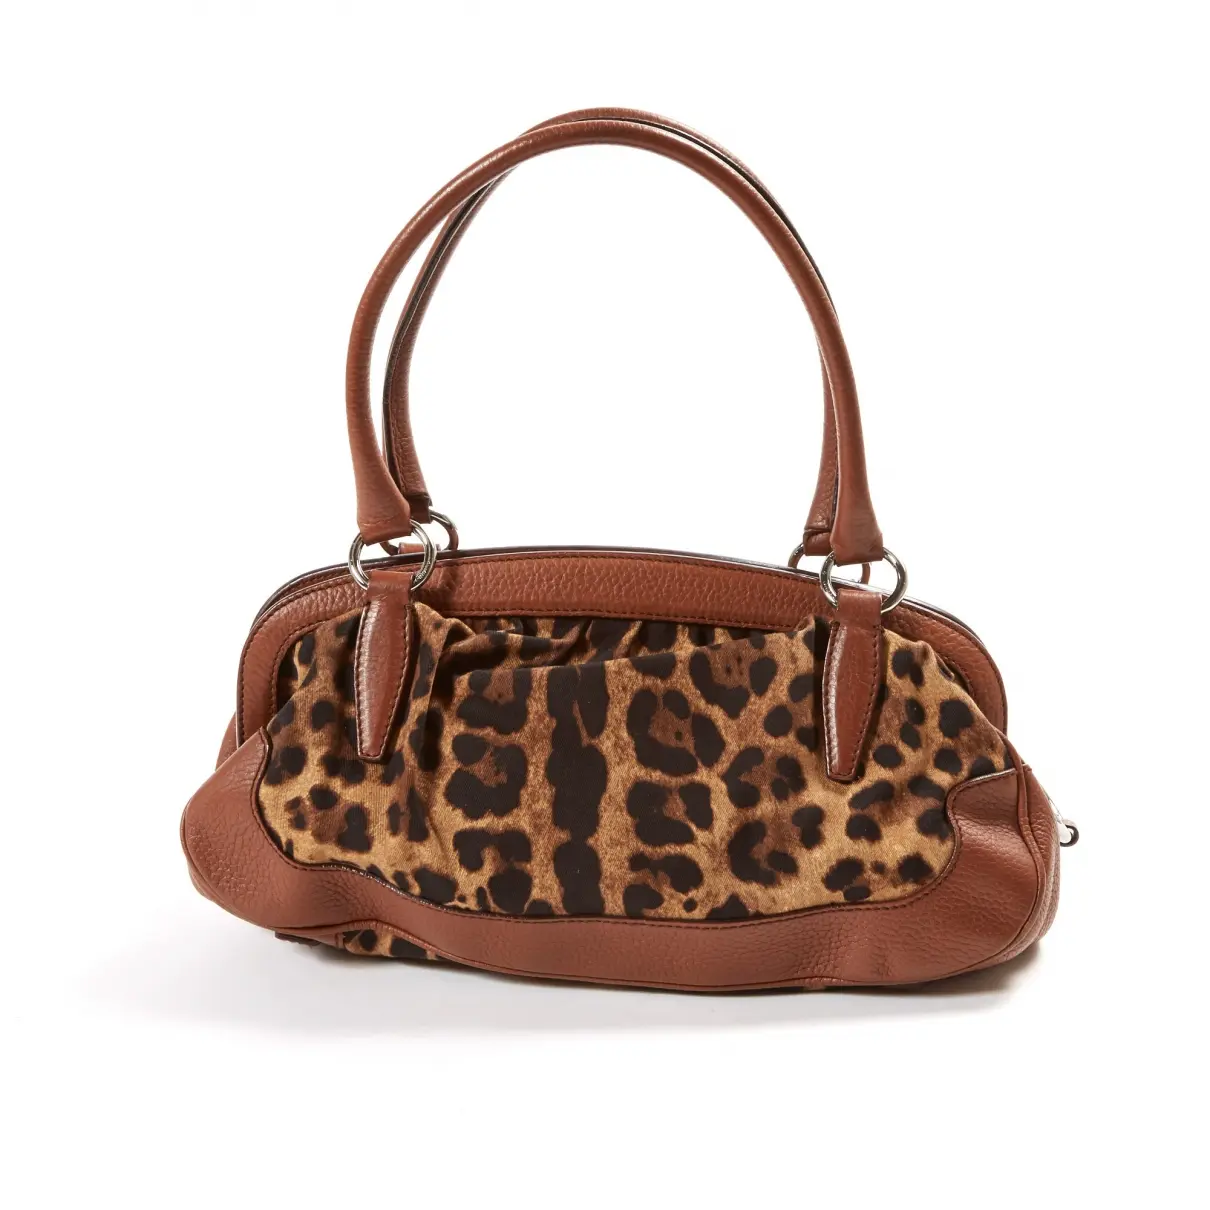 Dolce & Gabbana Cloth handbag for sale